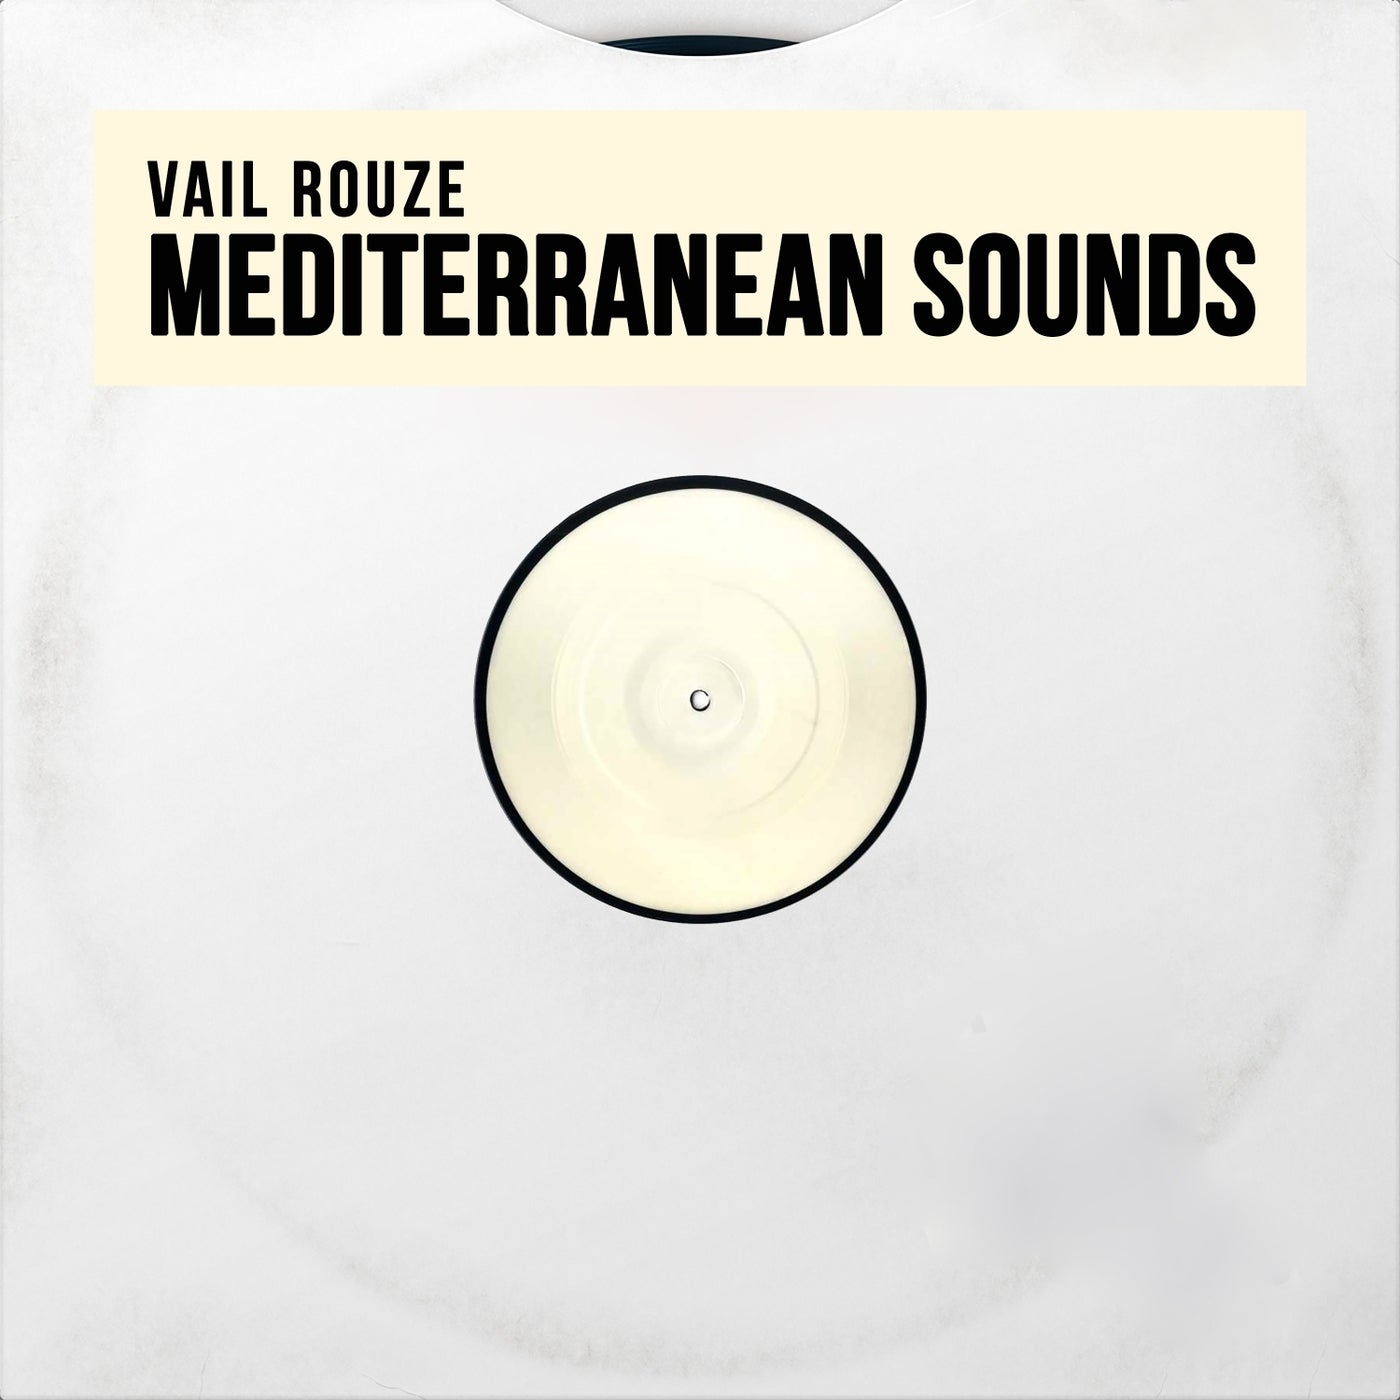 Mediterranean Sounds